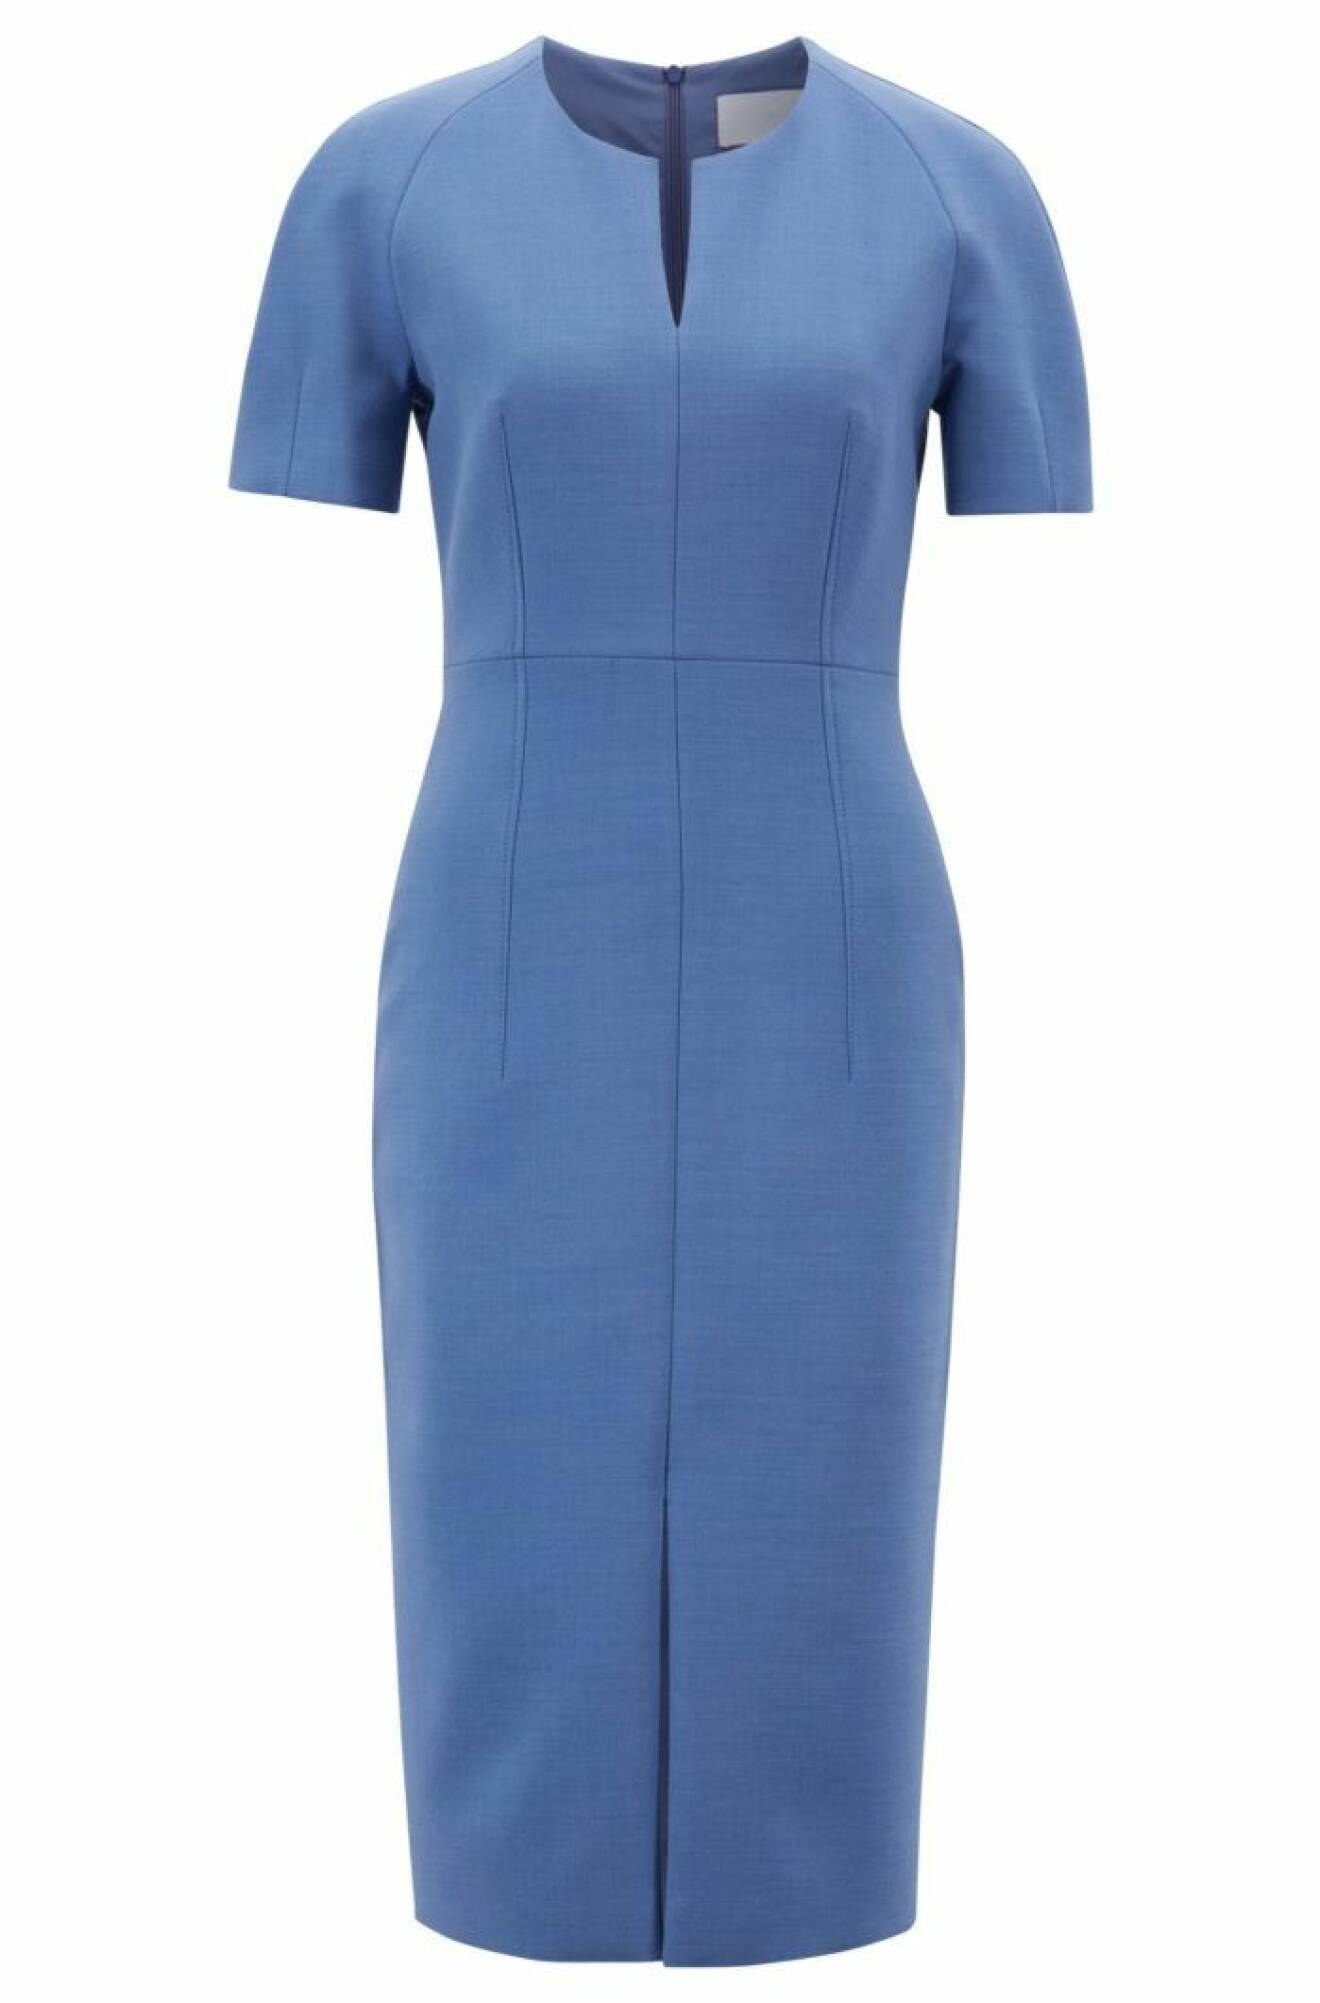 Blå figursydd klänning med kort ärm från Hugo Boss